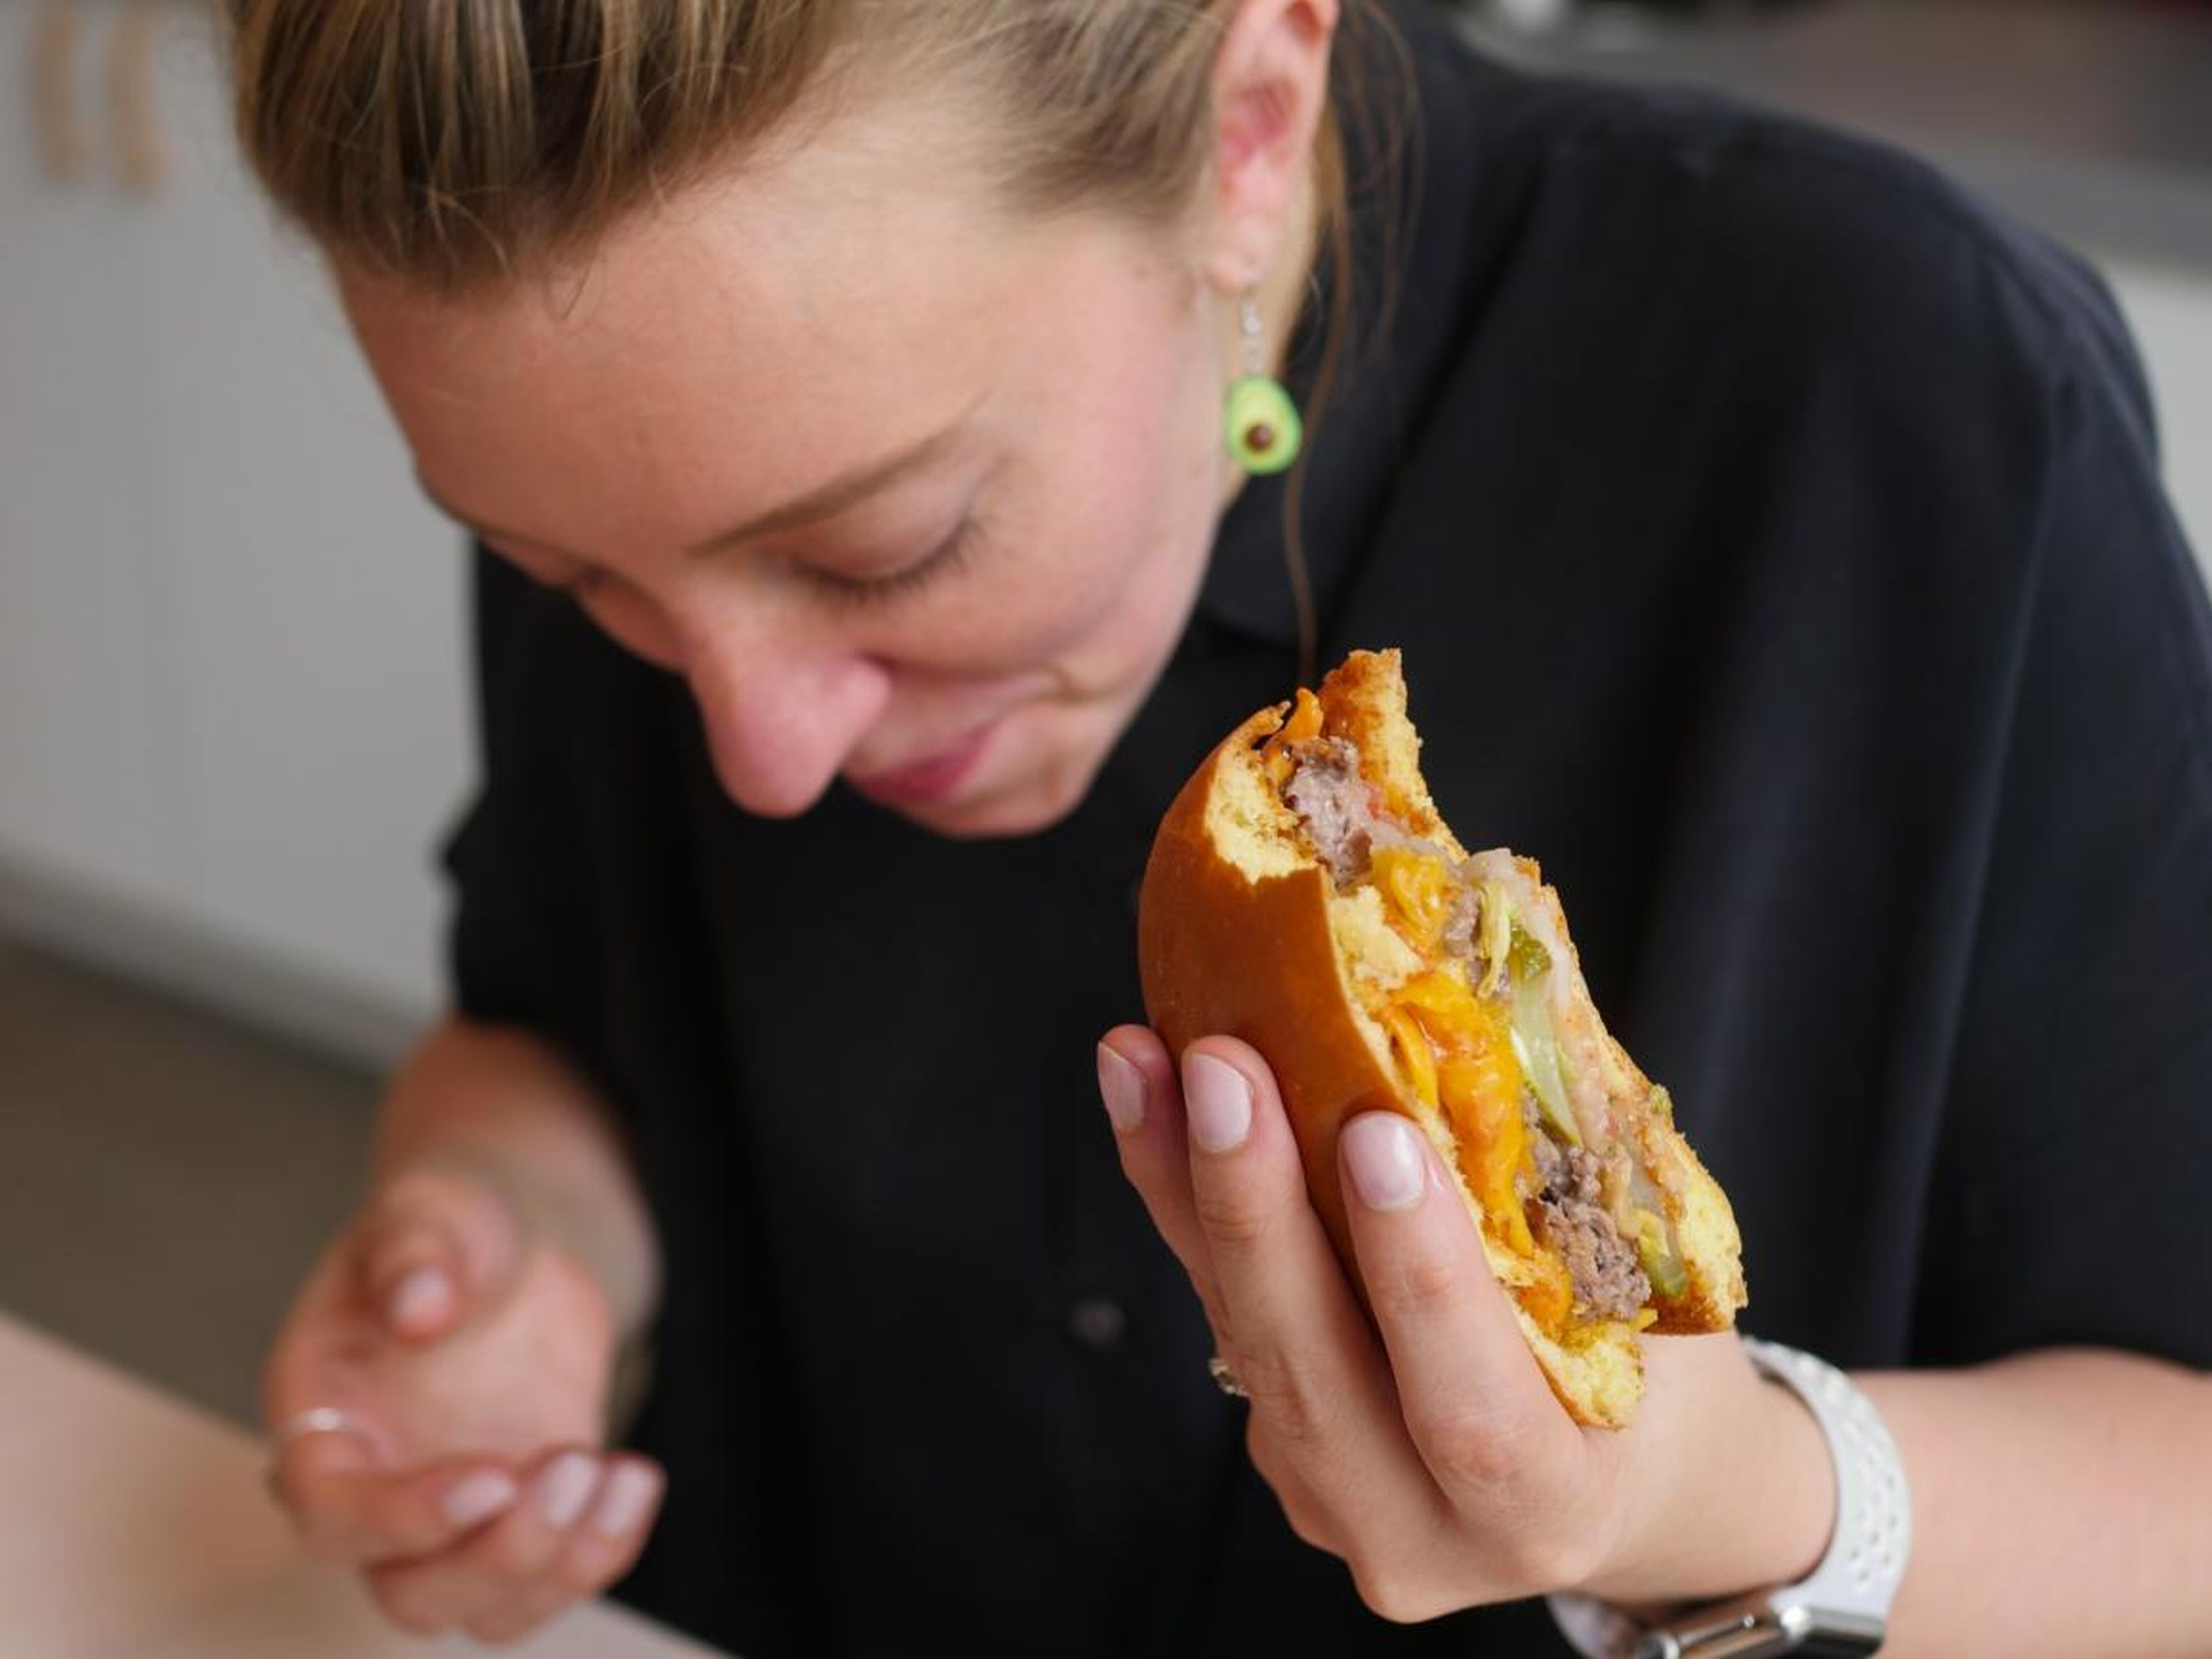 Melia Russell comiéndose una hamburguesa Creator.